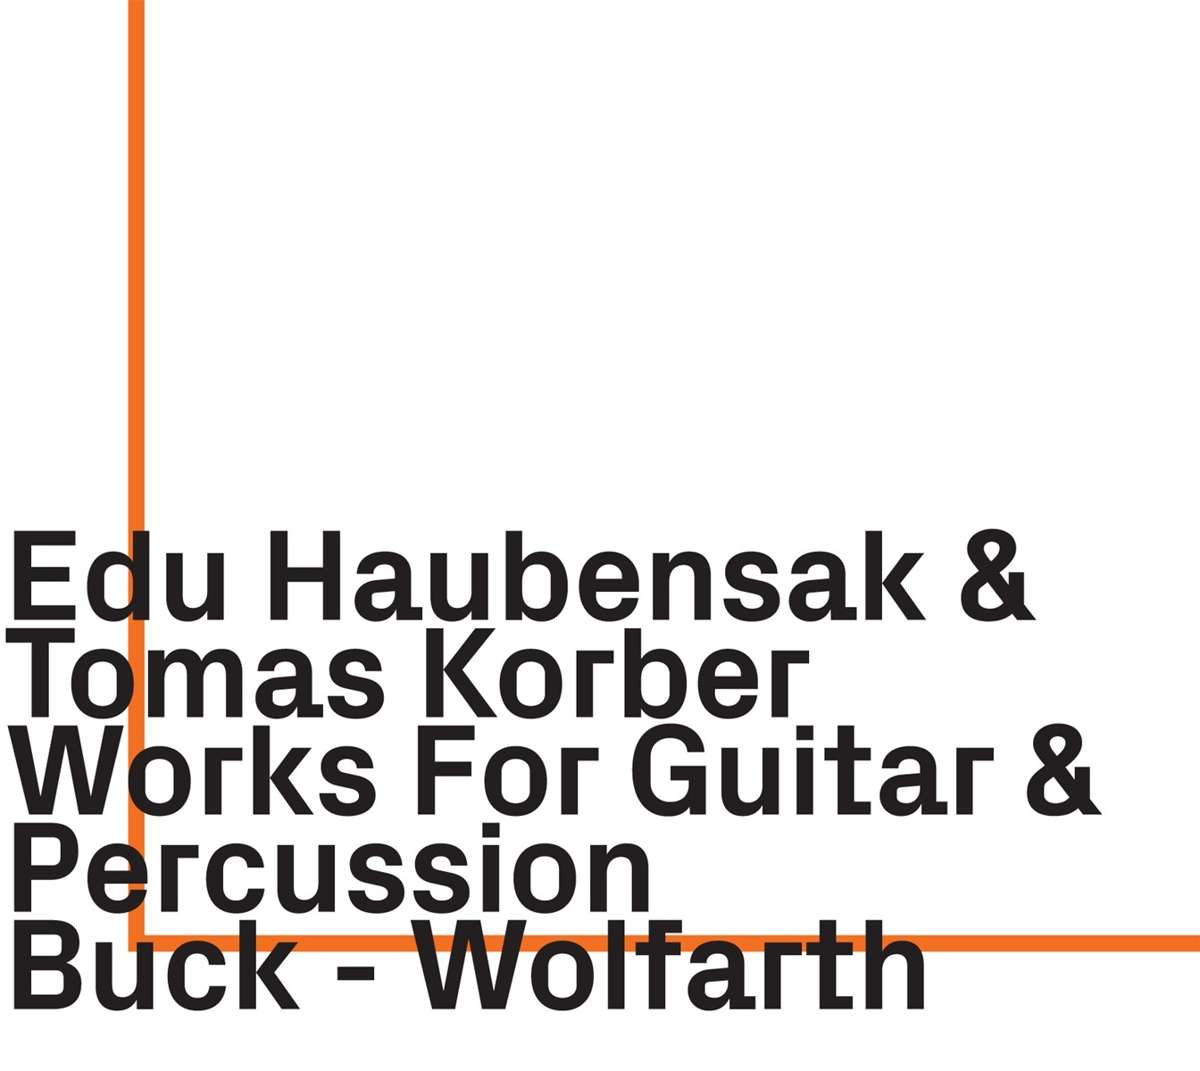 Haubensak / Korber – Works For Guitar & Percussion